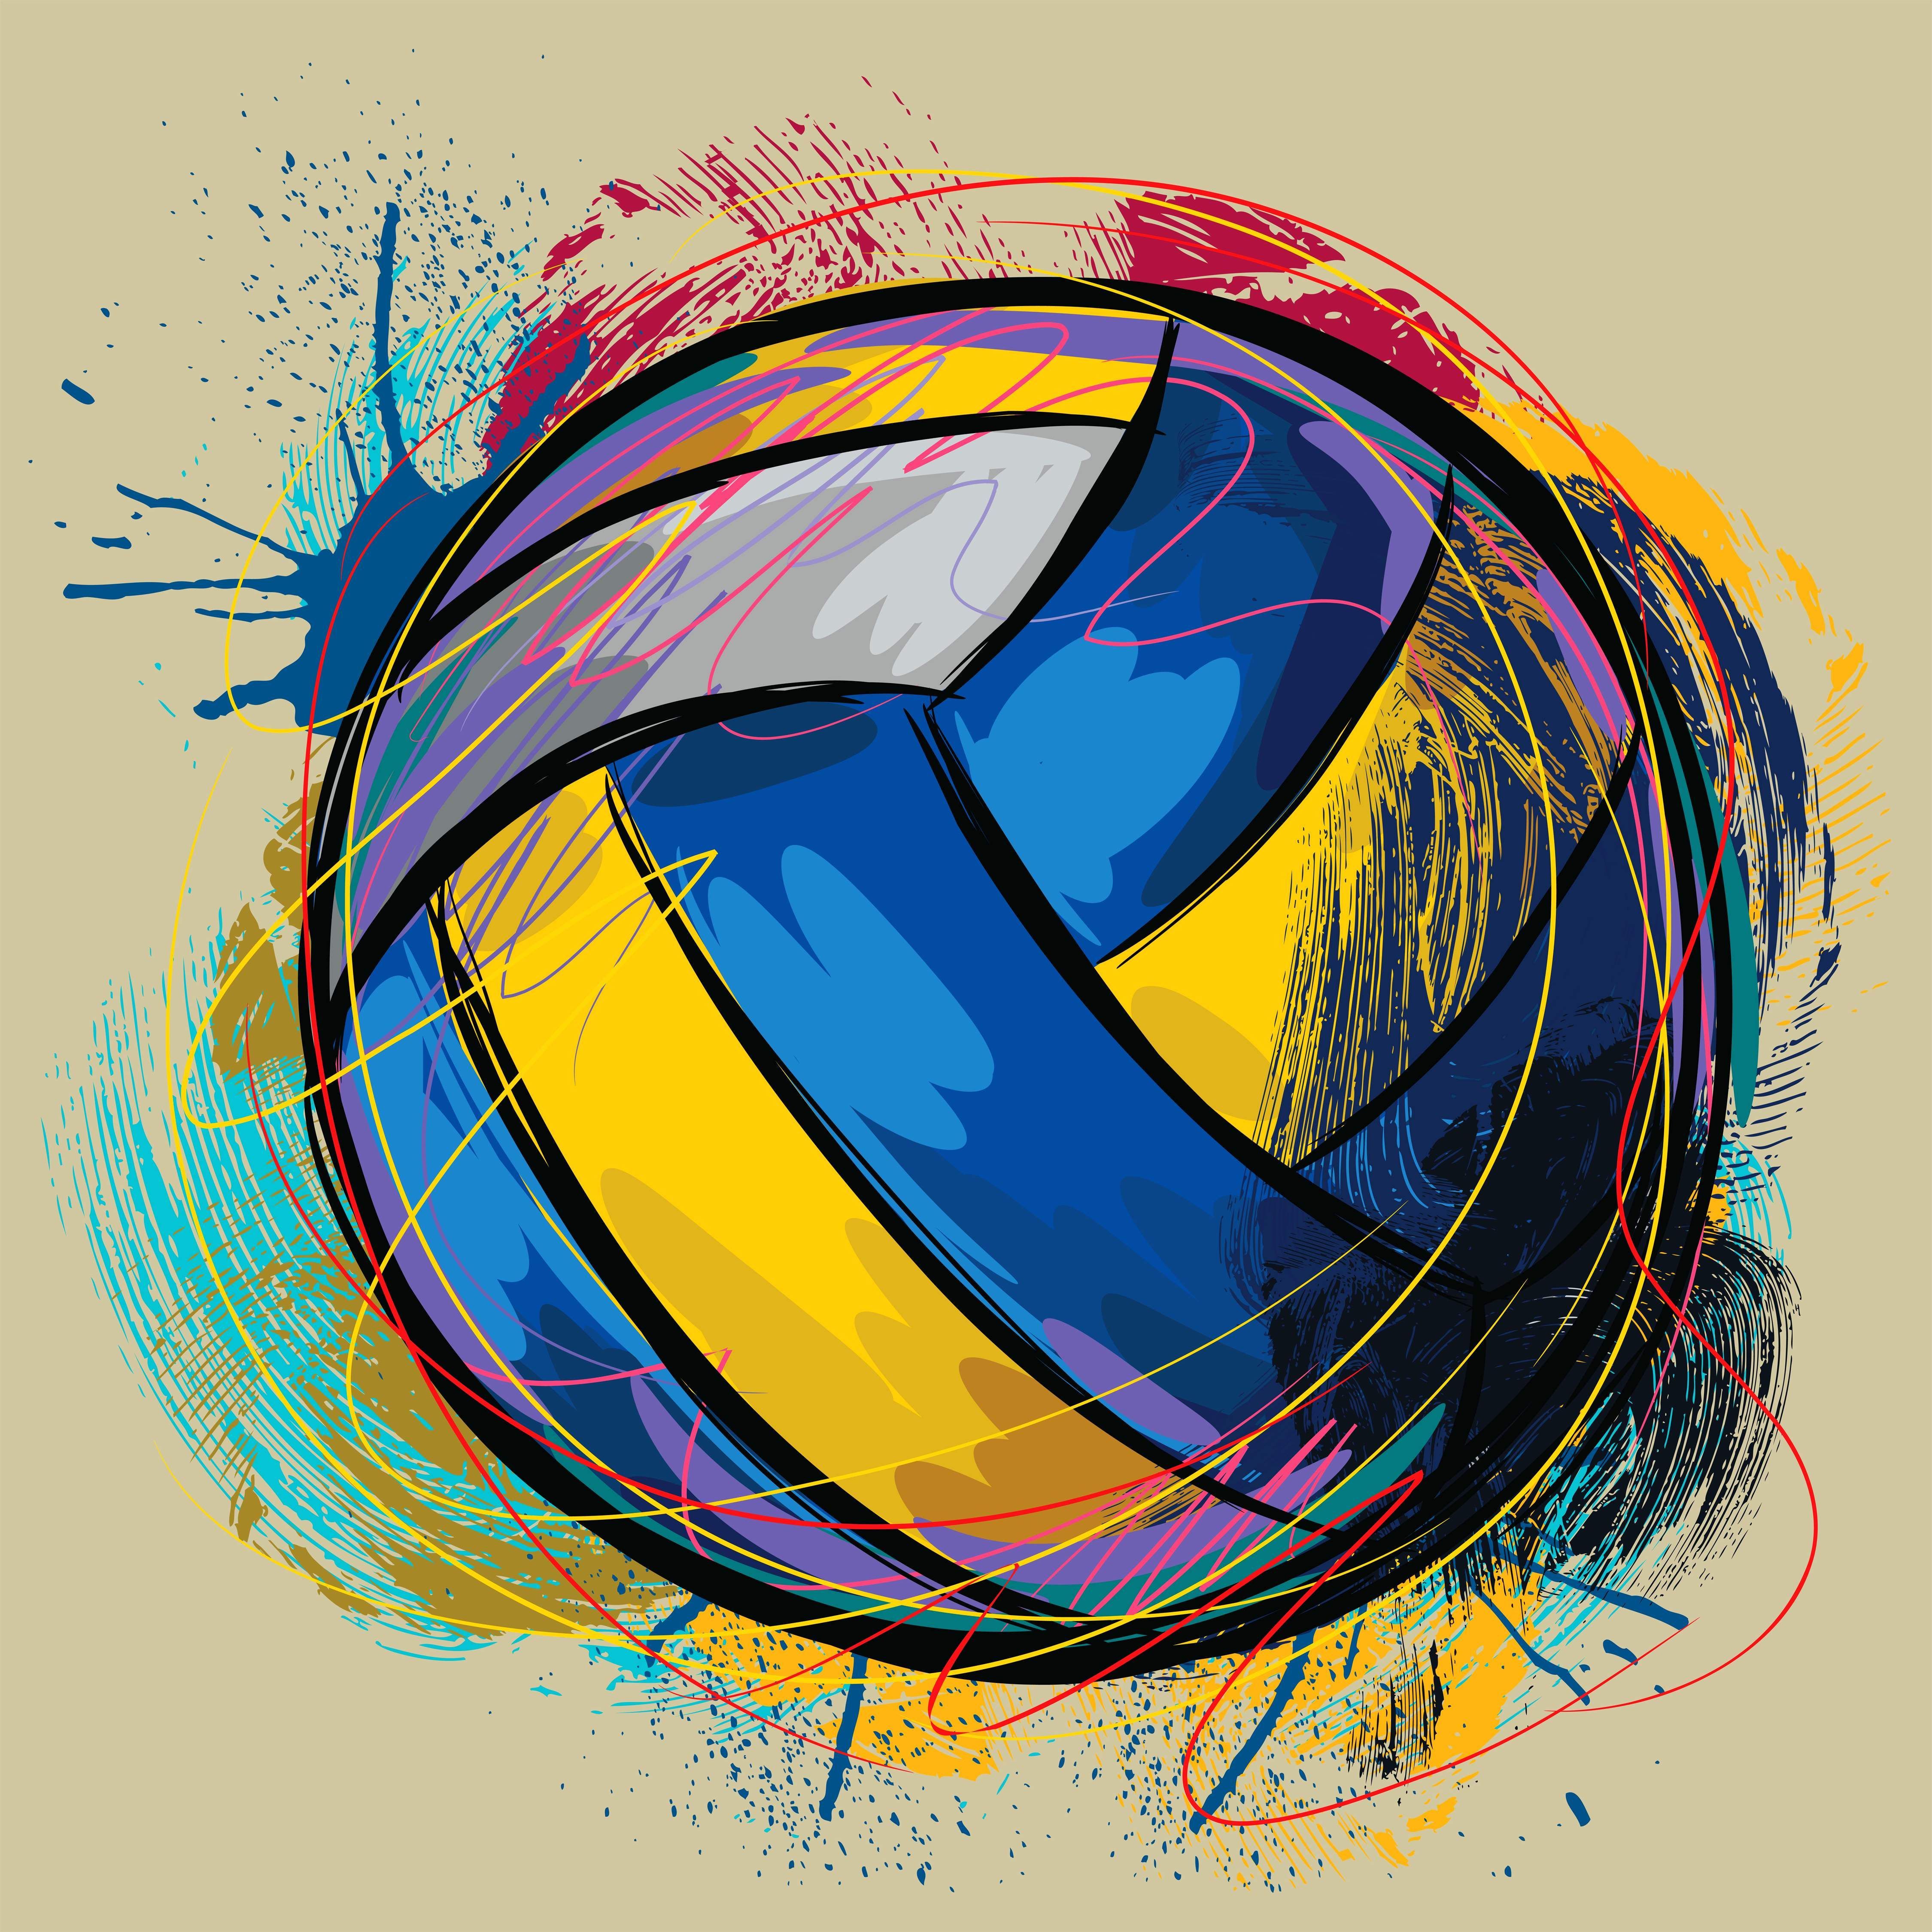 fondos de pantalla de voleibol para tu teléfono,diseño gráfico,ilustración,fuente,gráficos,circulo